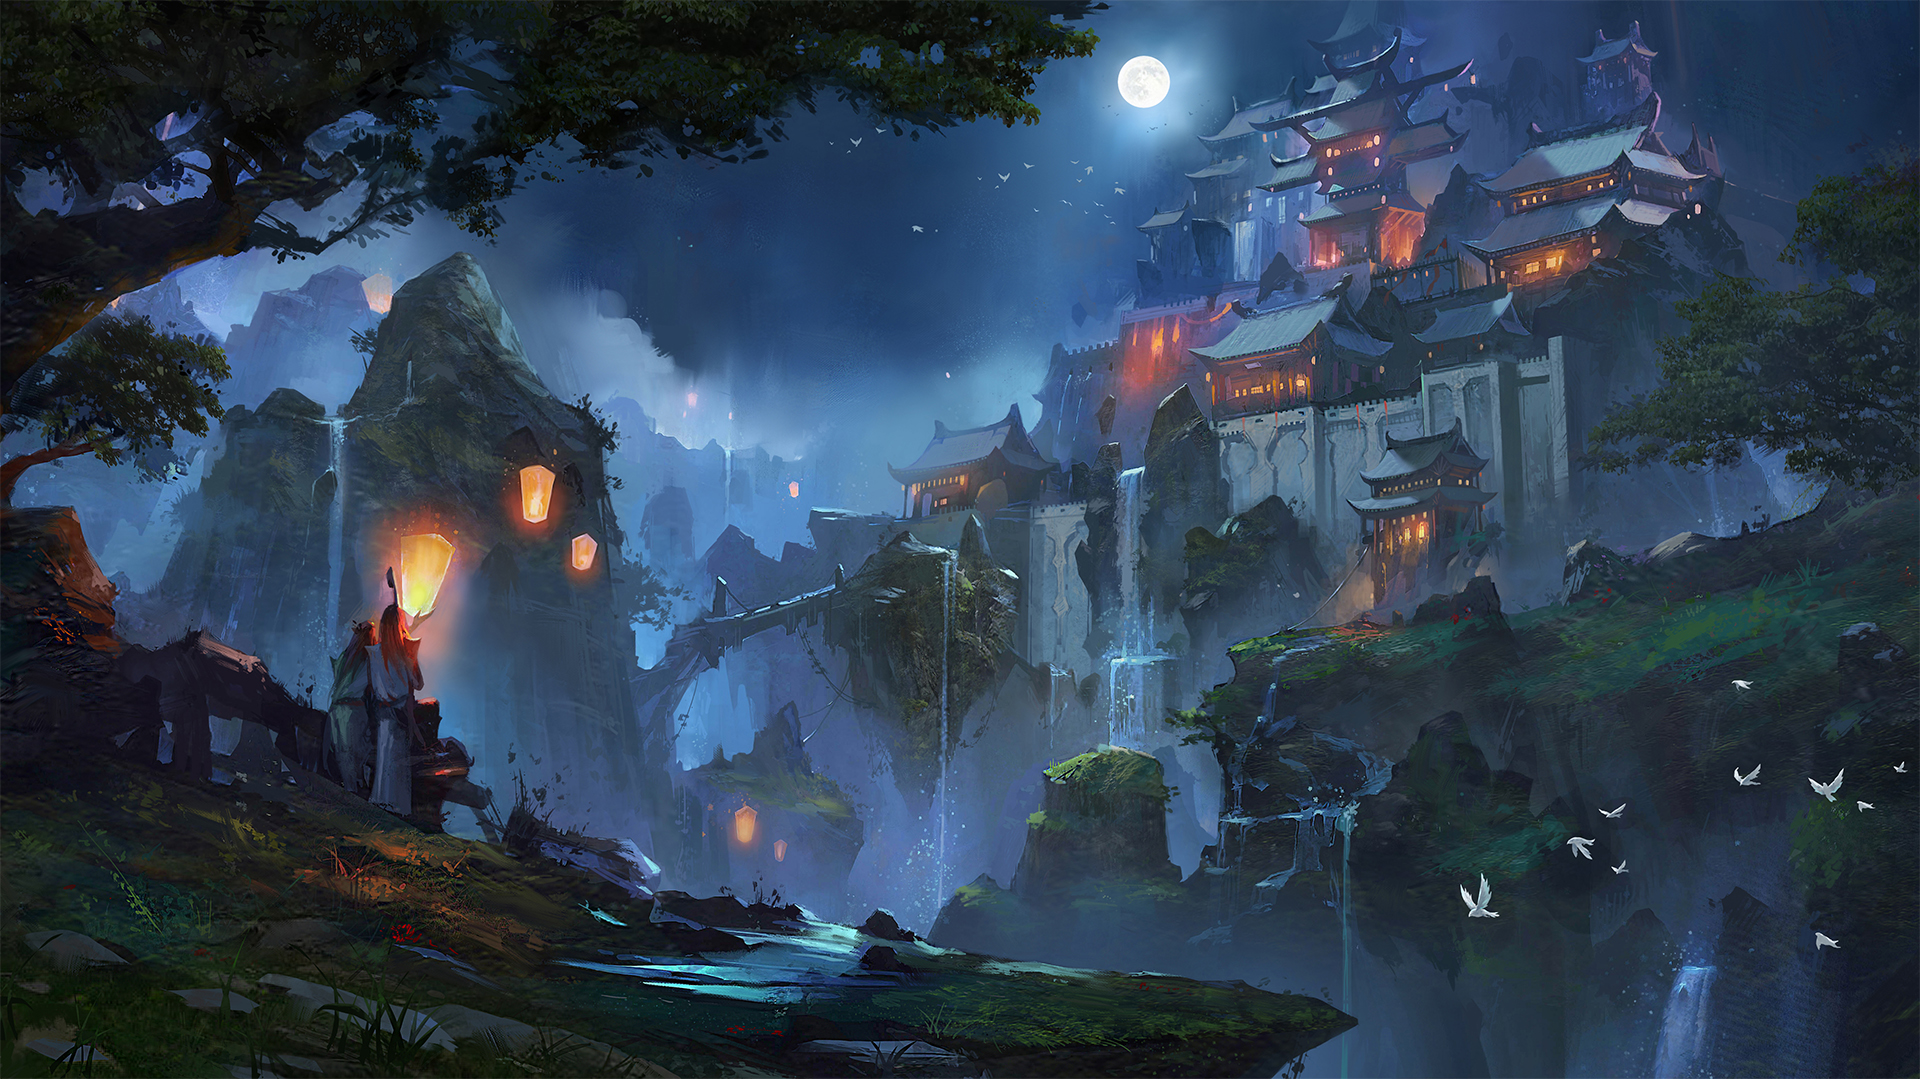 waterfall, fantasy, castle, lantern, moon, night, scenery, castles